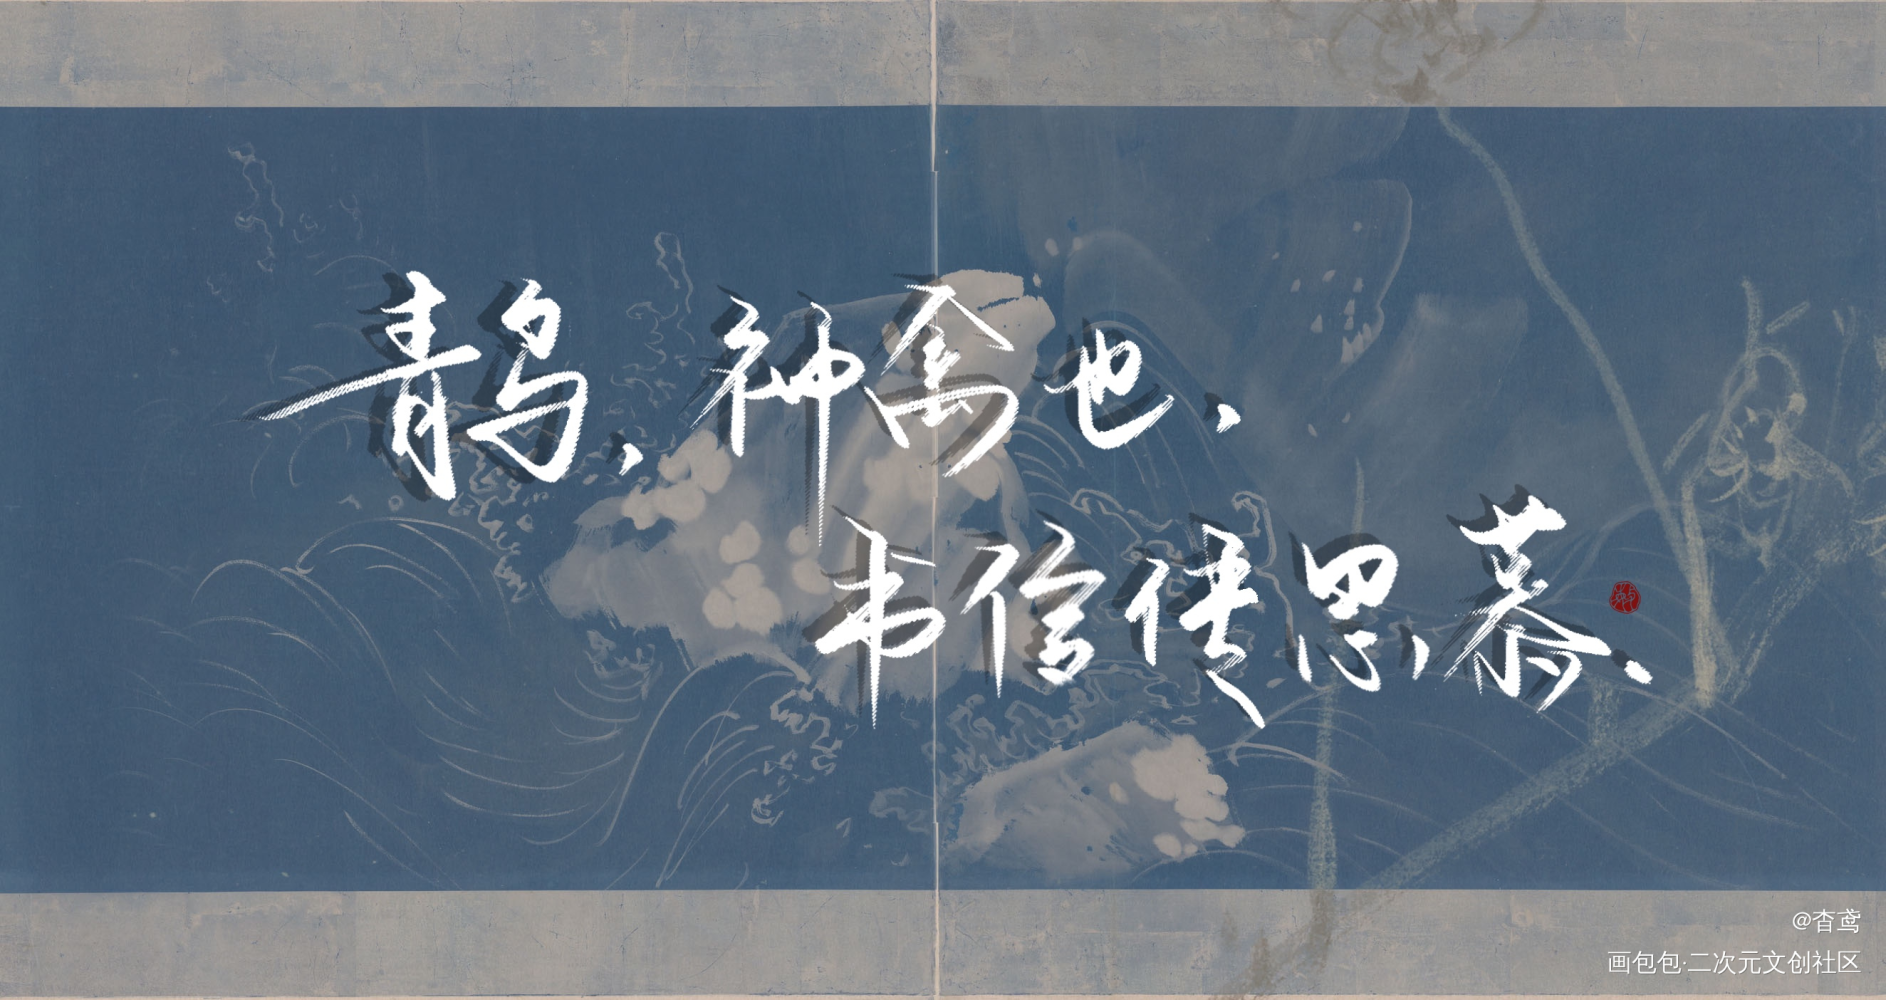 【判官】系列6/9_木苏里判官字体设计见字如晤手写绘画作品